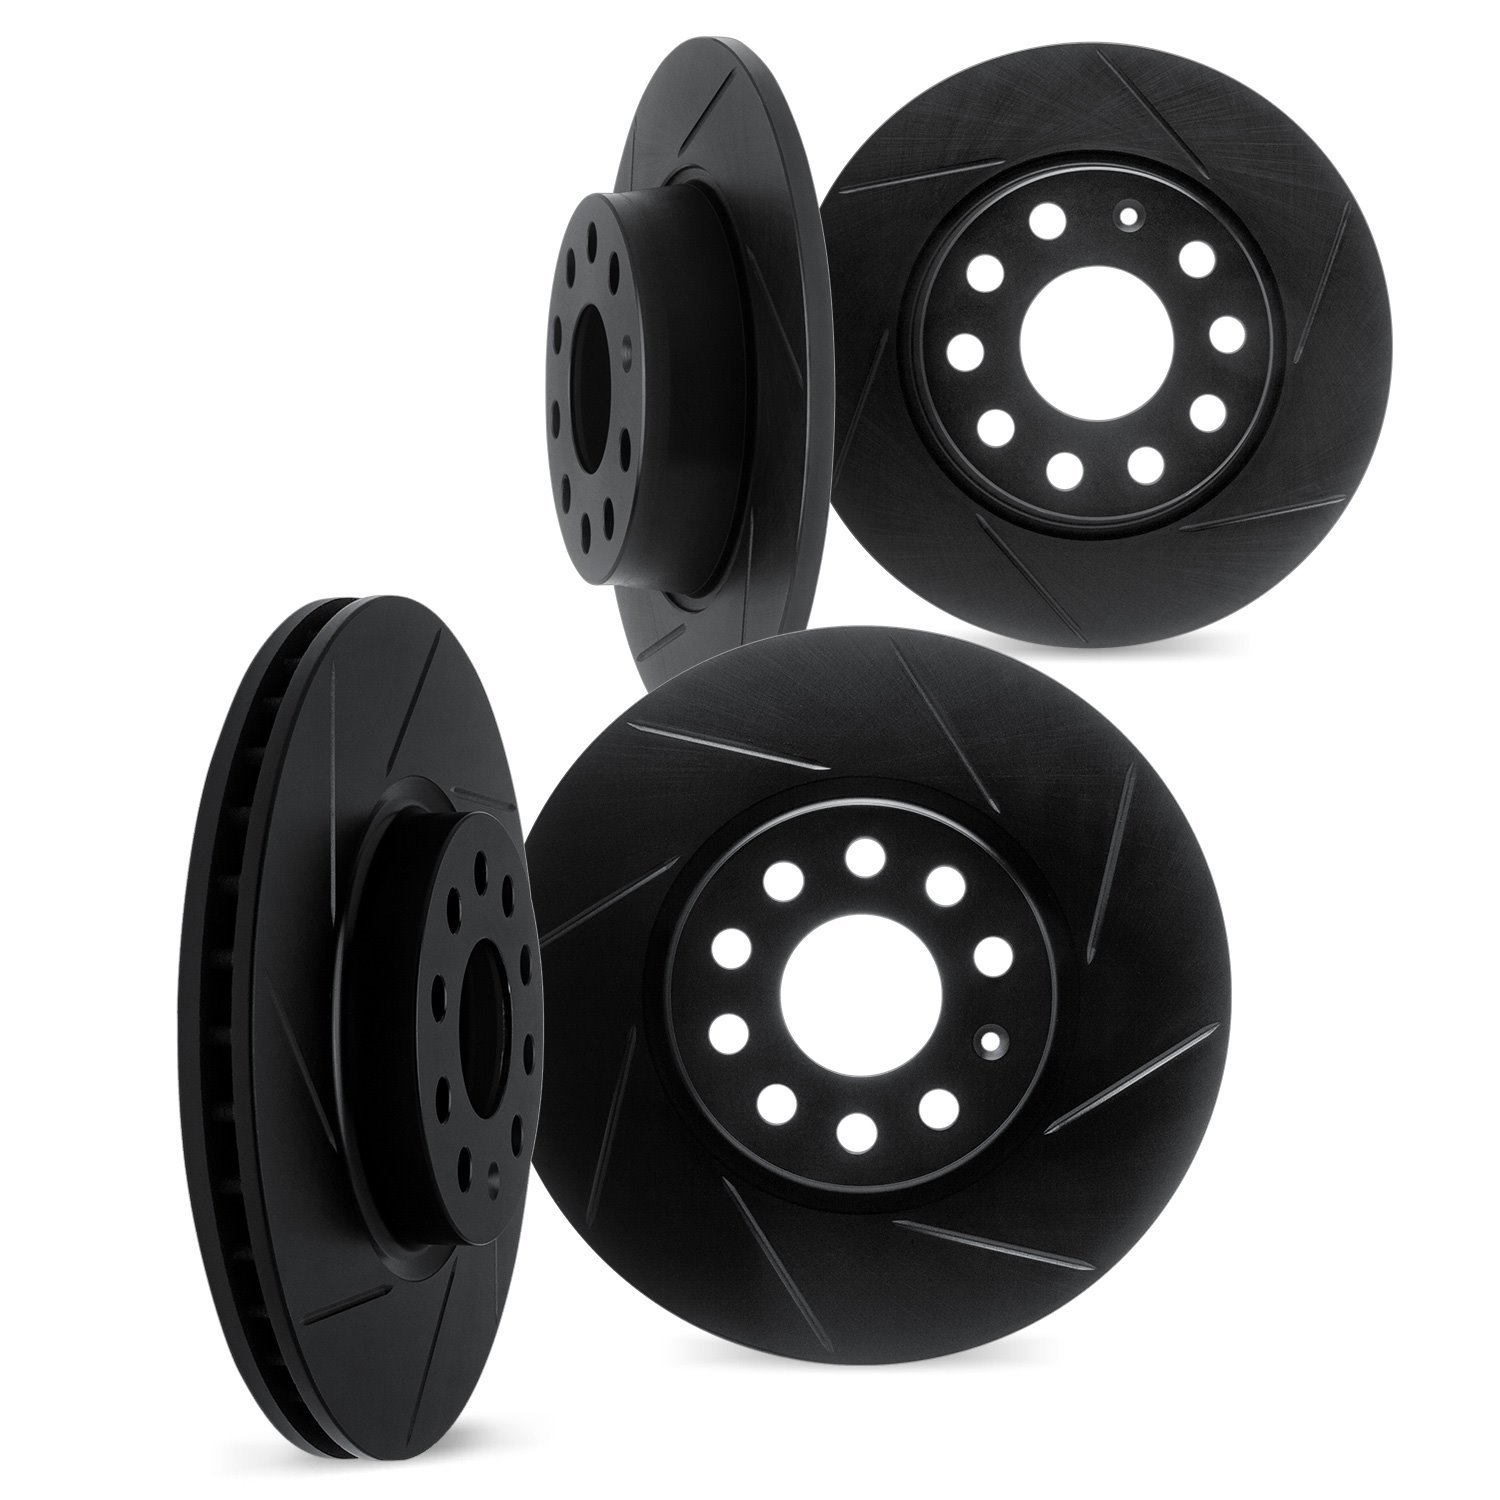 3004-03090 Slotted Brake Rotors [Black], Fits Select Kia/Hyundai/Genesis, Position: Front and Rear